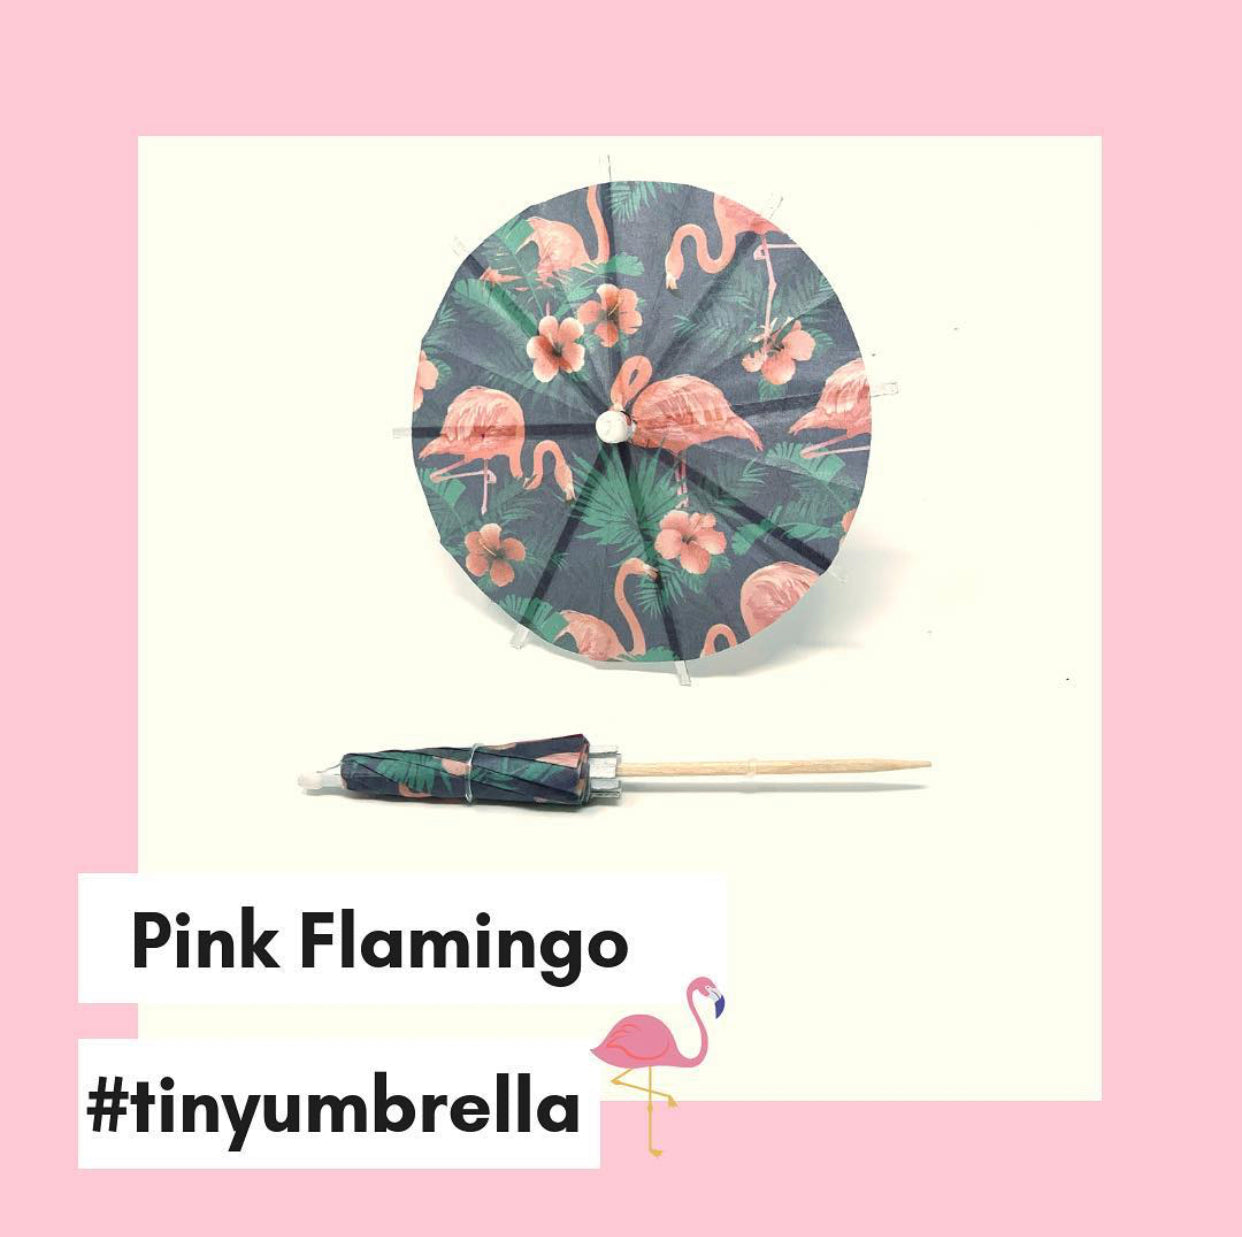 Pink Flamingo Cocktail Umbrella - The Tiny Umbrella